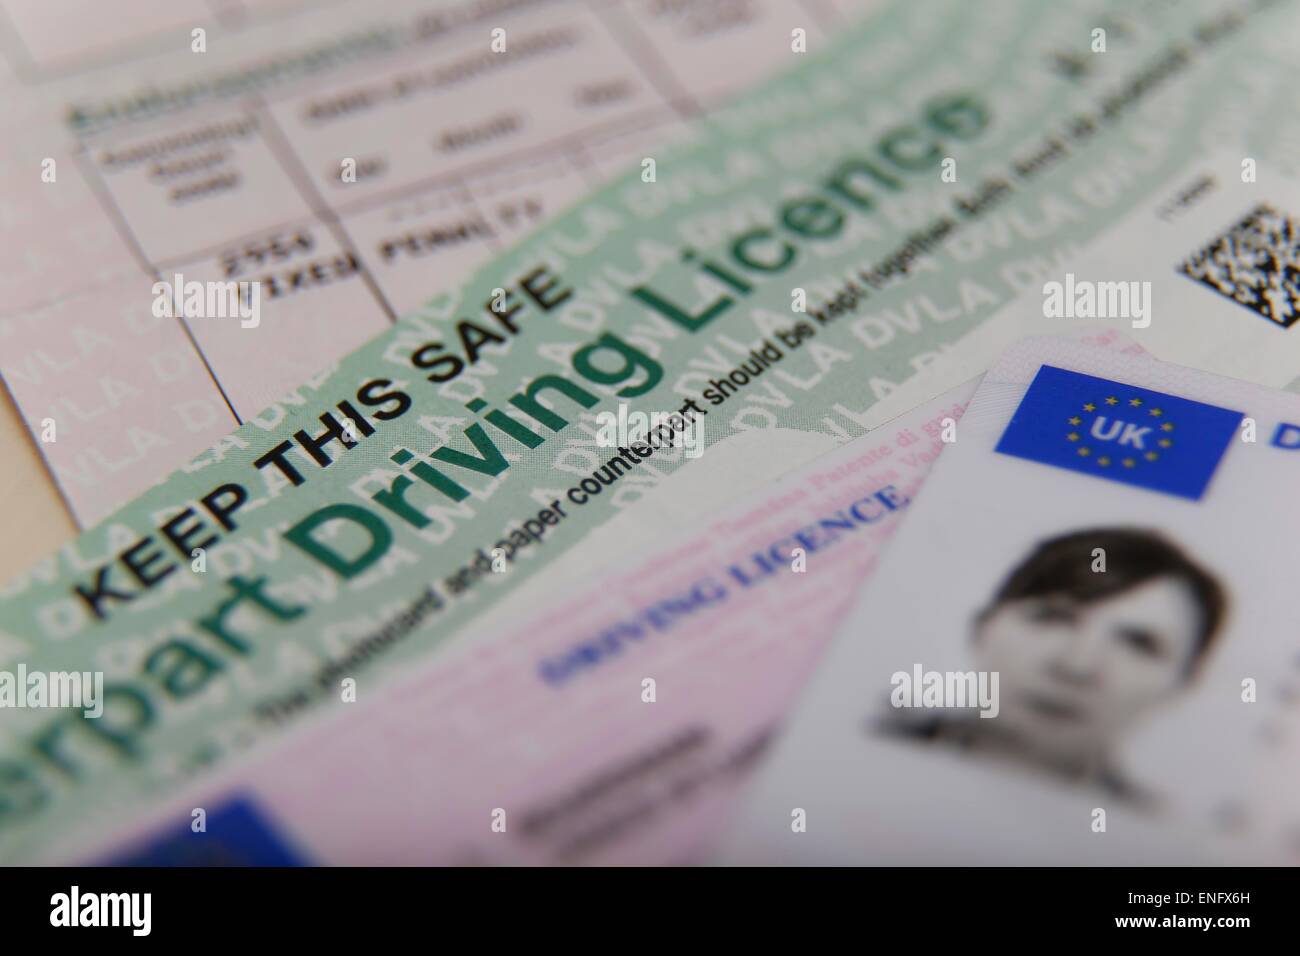 Un document du Royaume-Uni et permis de conduire carte en plastique Banque D'Images